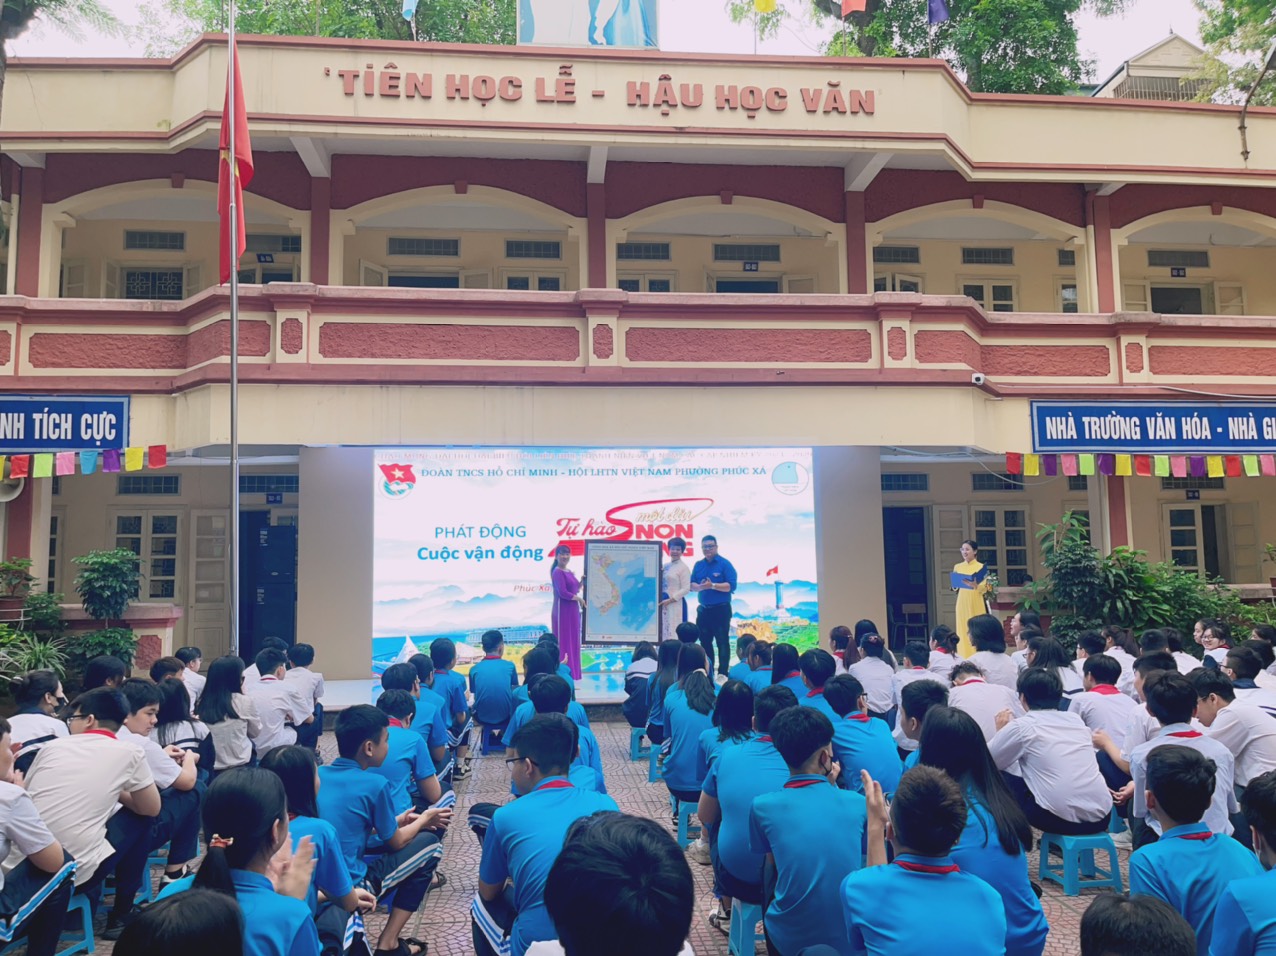 Trường THCS Phúc Xá long trọng tổ chức Chương trình Chào mừng  “Kỷ niệm 70 năm chiến thắng Điện Biên Phủ” (07/5/1954 – 07/5/2024)